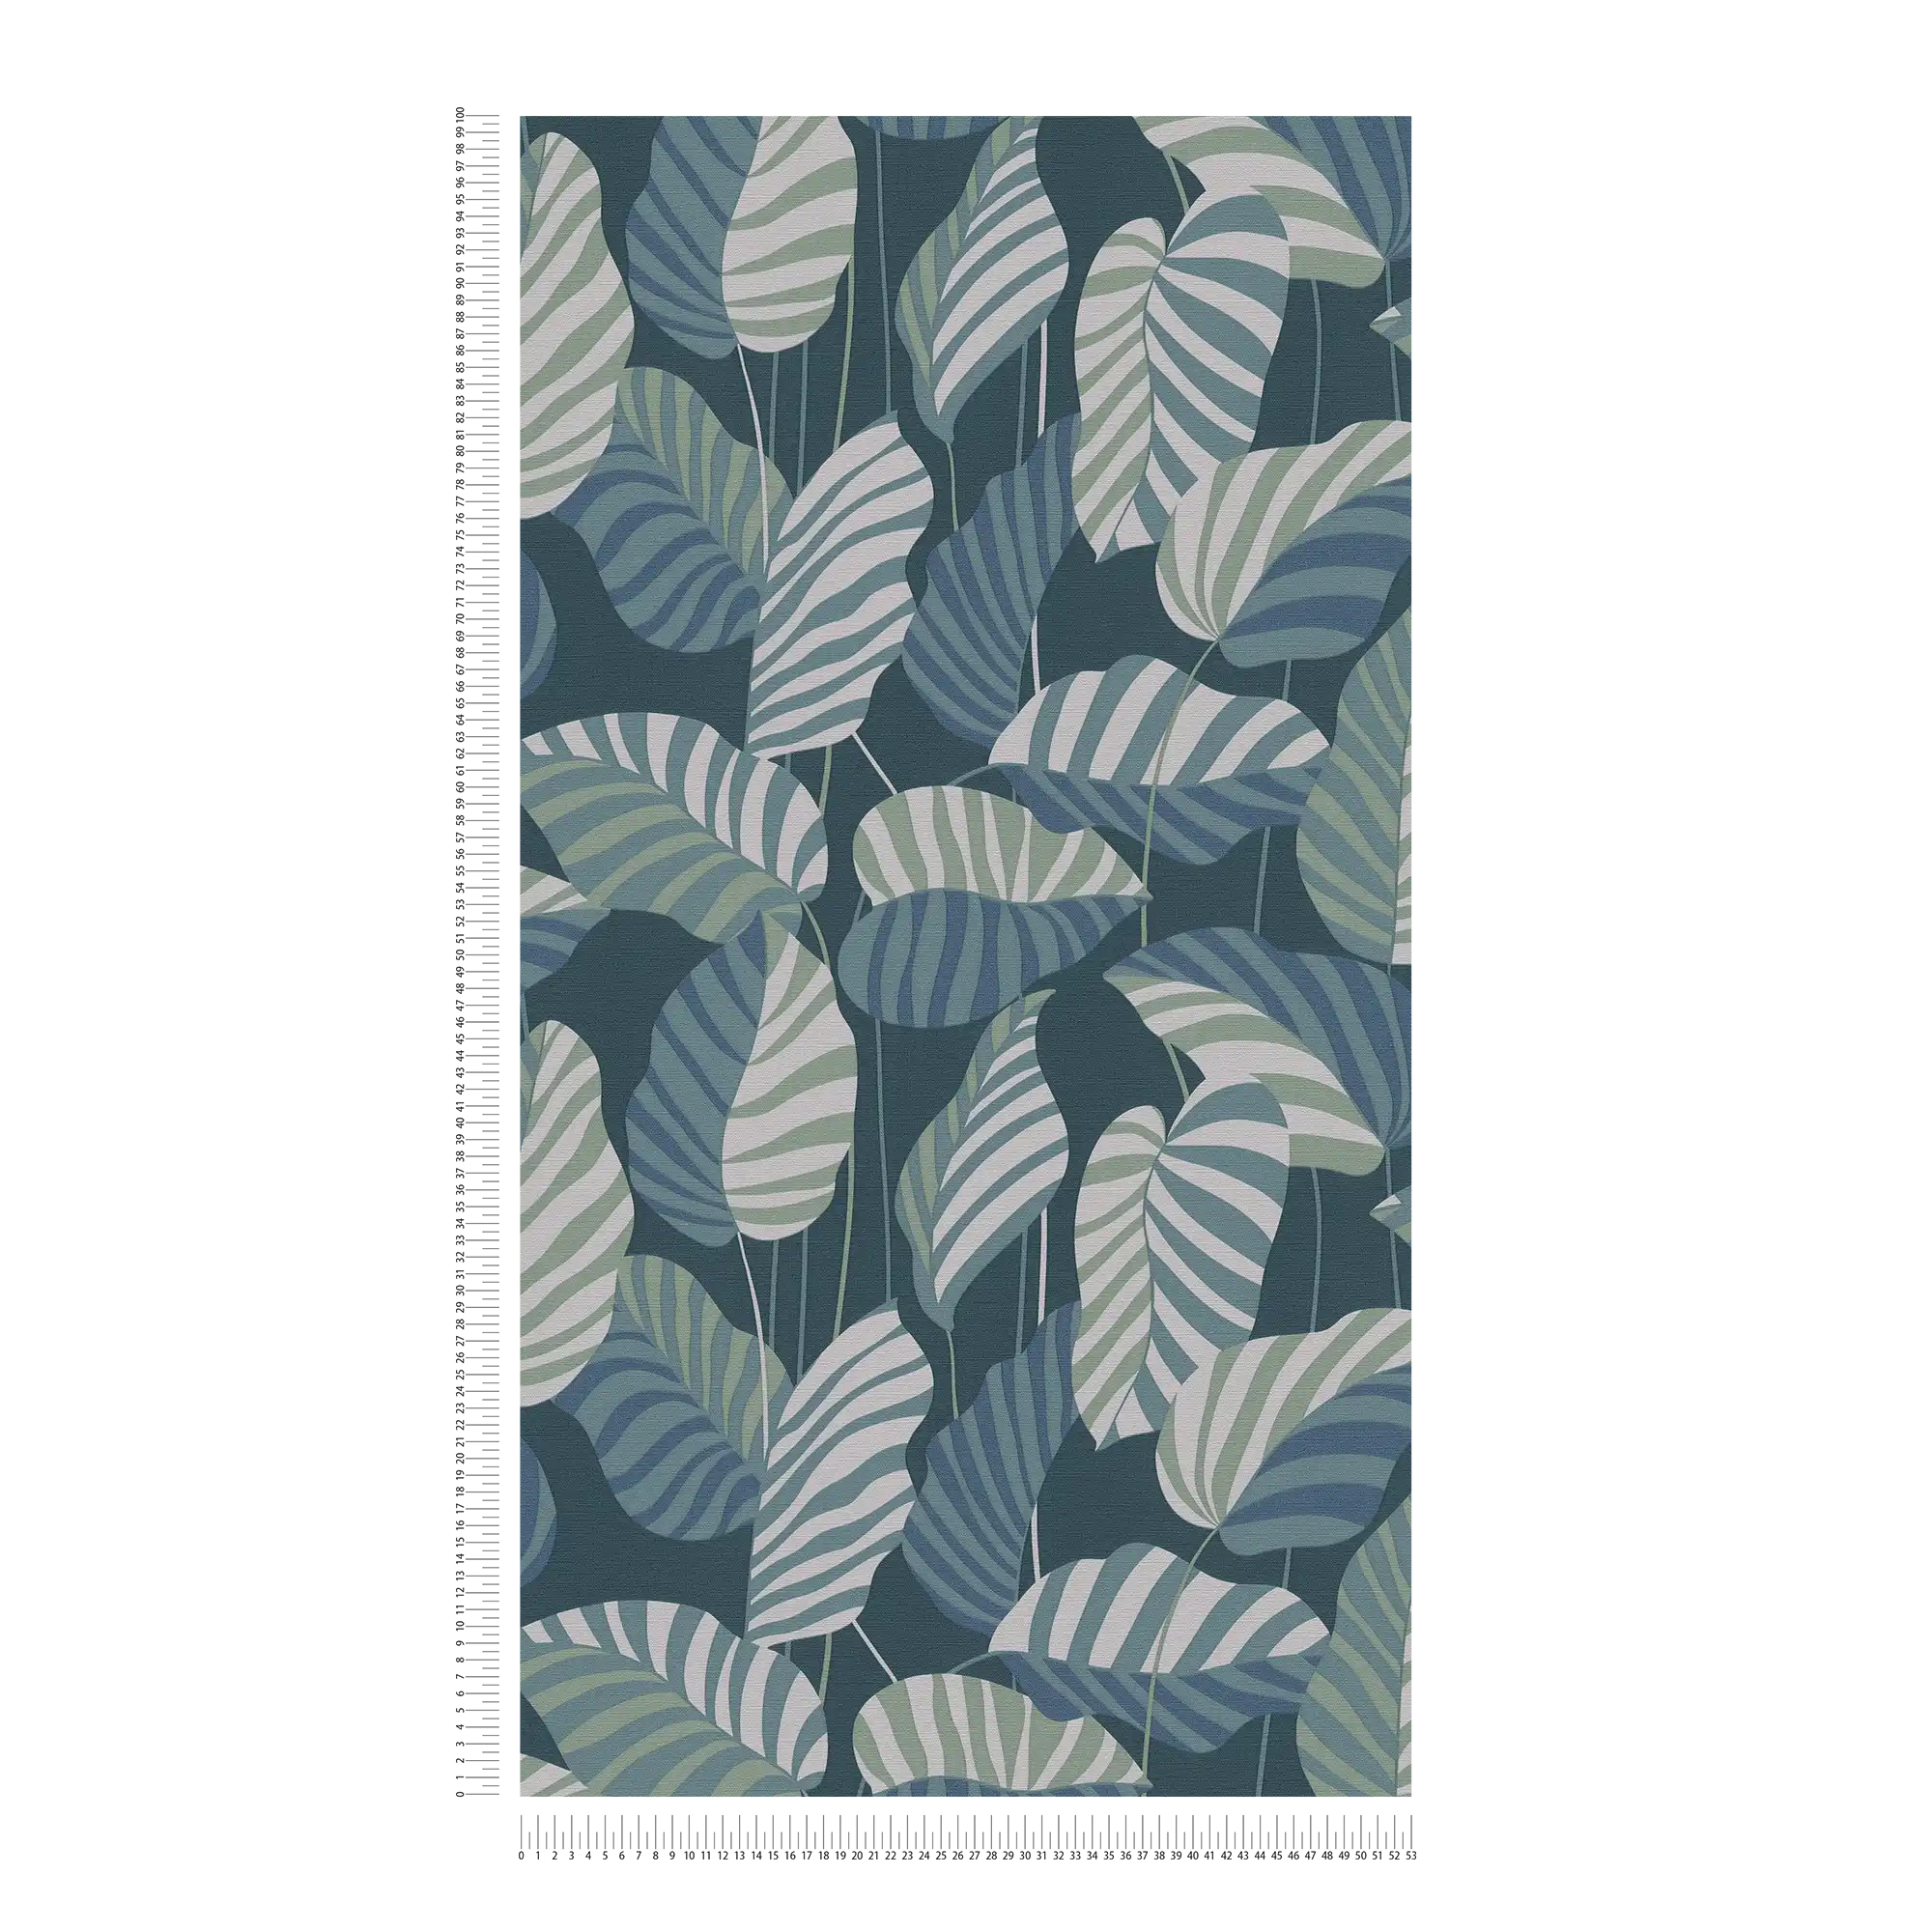             Jungle stijl vliesbehang met bladeren - blauw, groen, wit
        